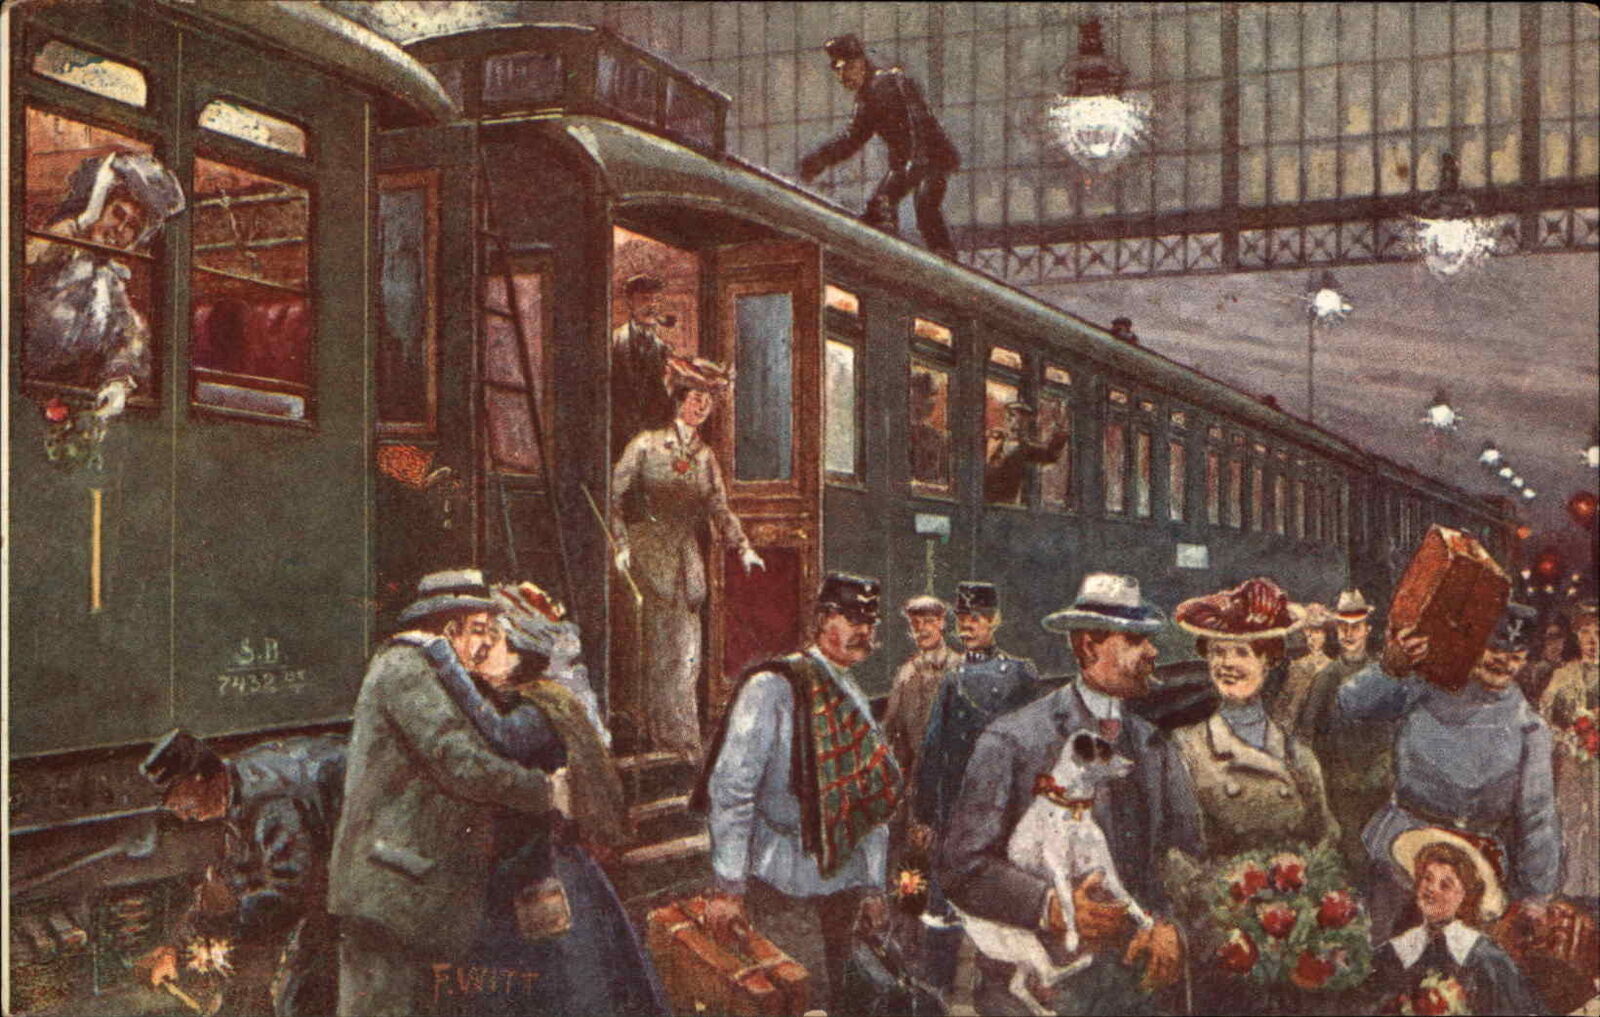 A/S Witt Train Platform Departure Couple Kissing c1910 Vintage Postcard